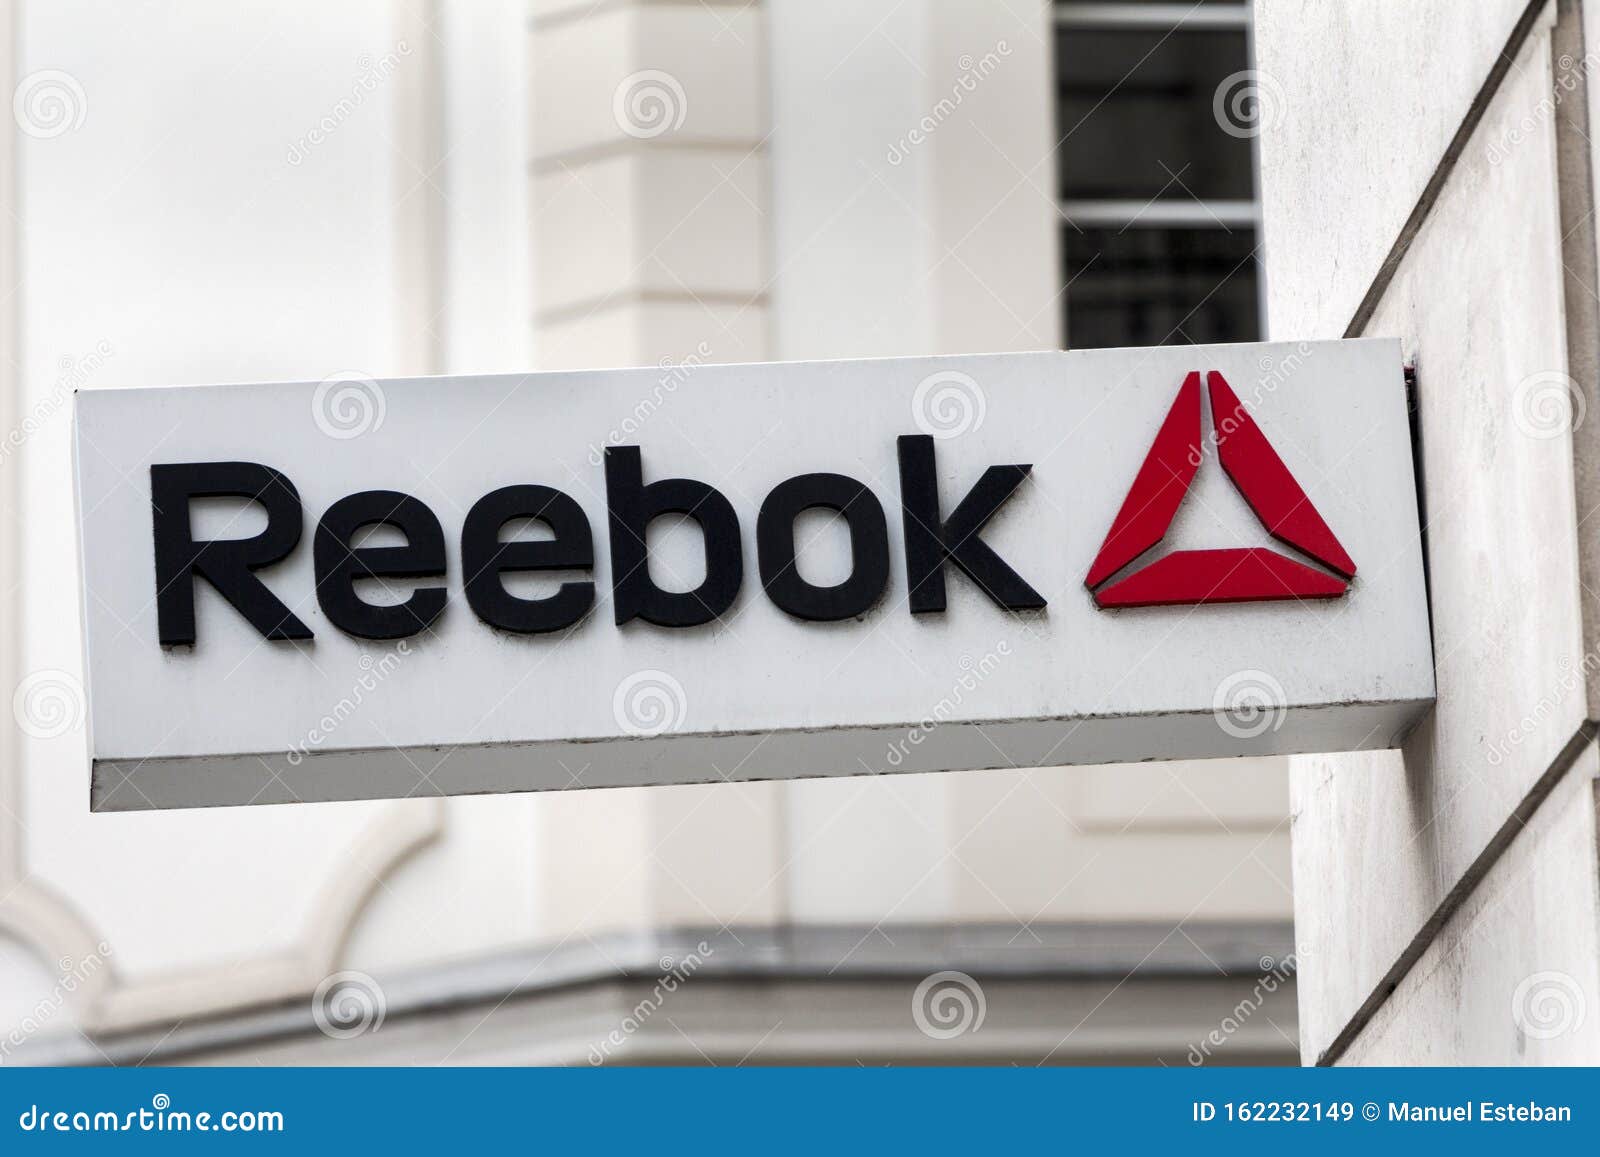 Reebok Logo on Reebok Stock Image - Image of discount, logo: 162232149